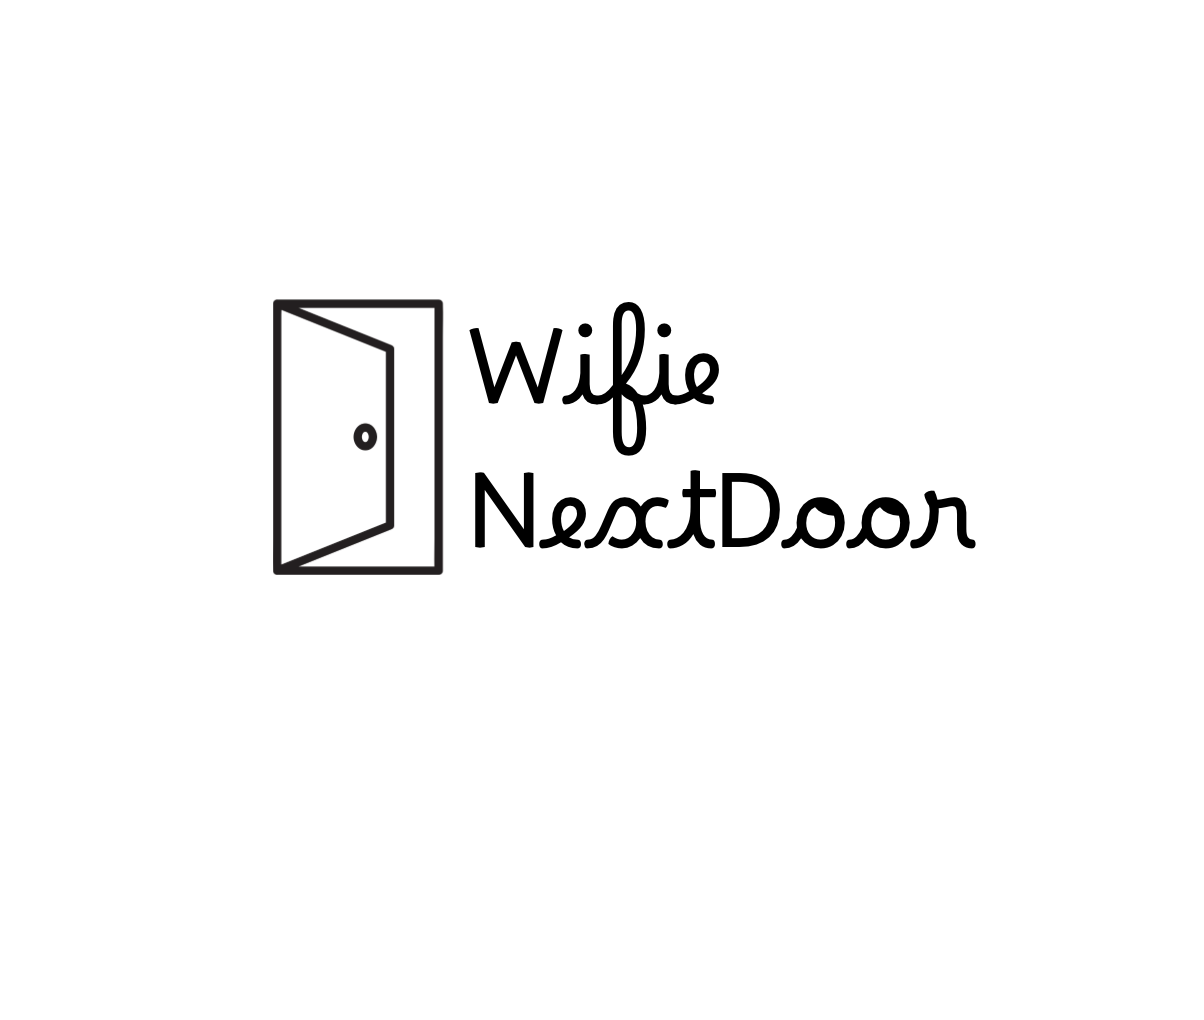 Wife Next Door – Home